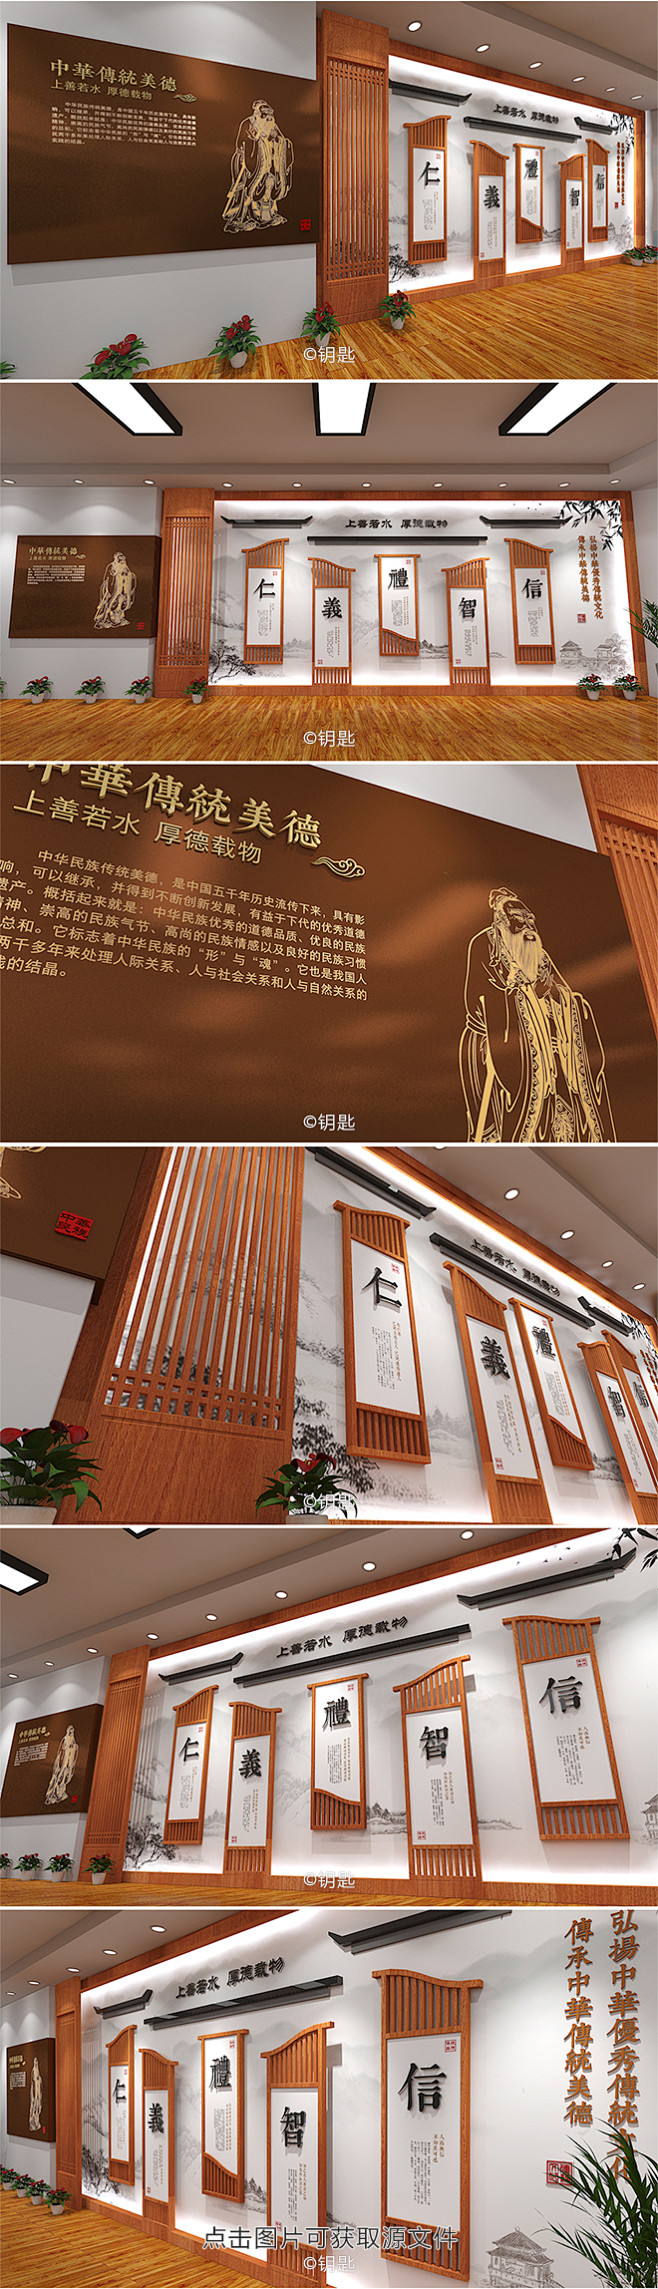 新中式校园文化墙
道德文化长廊传统美德文...